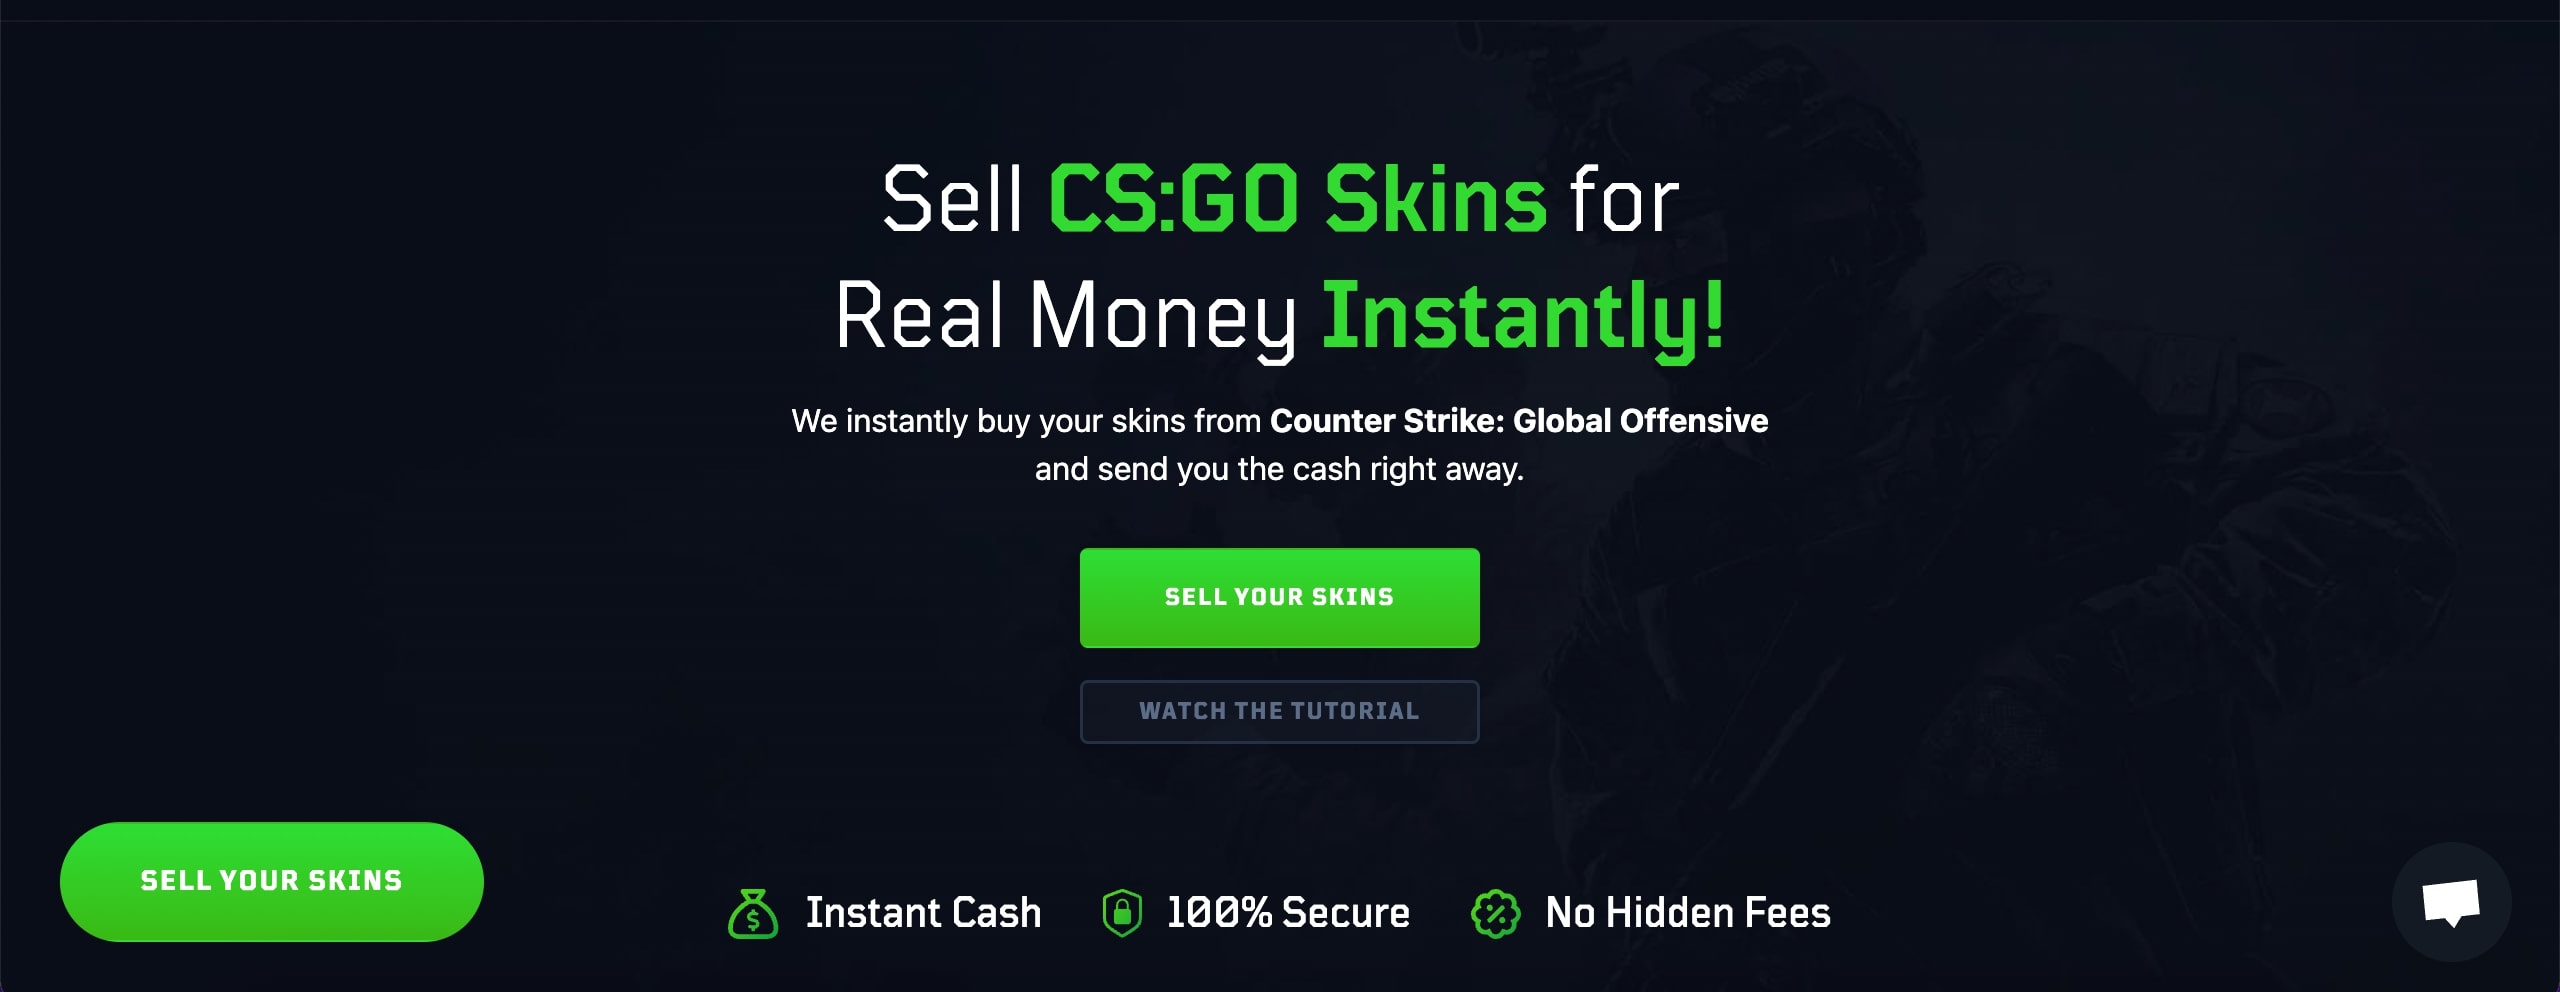 sell csgo skins online